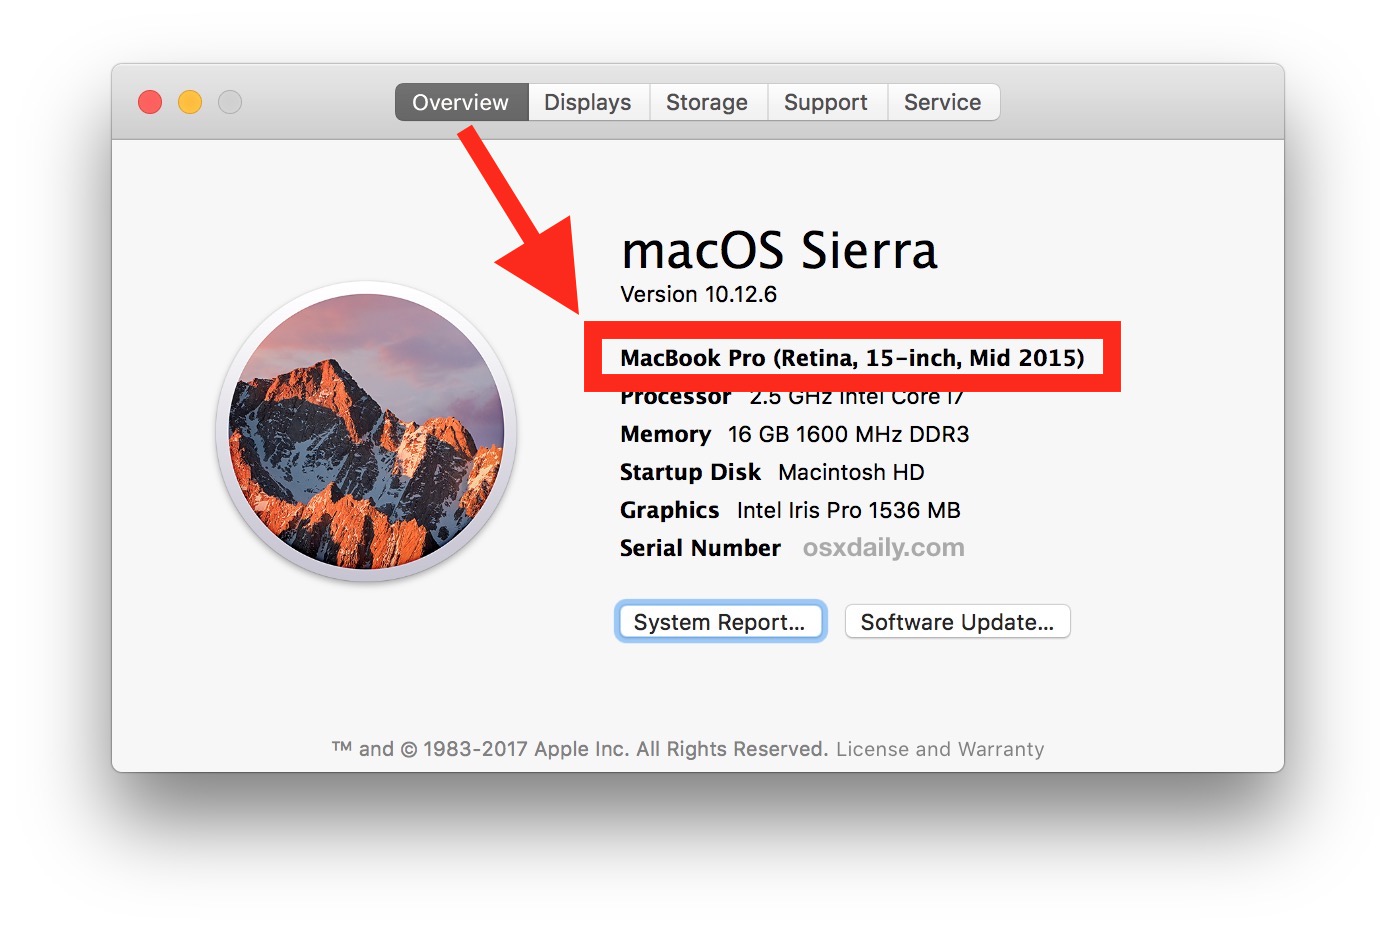 Cómo encontrar el modelo de Mac y el año del modelo para verificar la compatibilidad de MacOS Mojave 